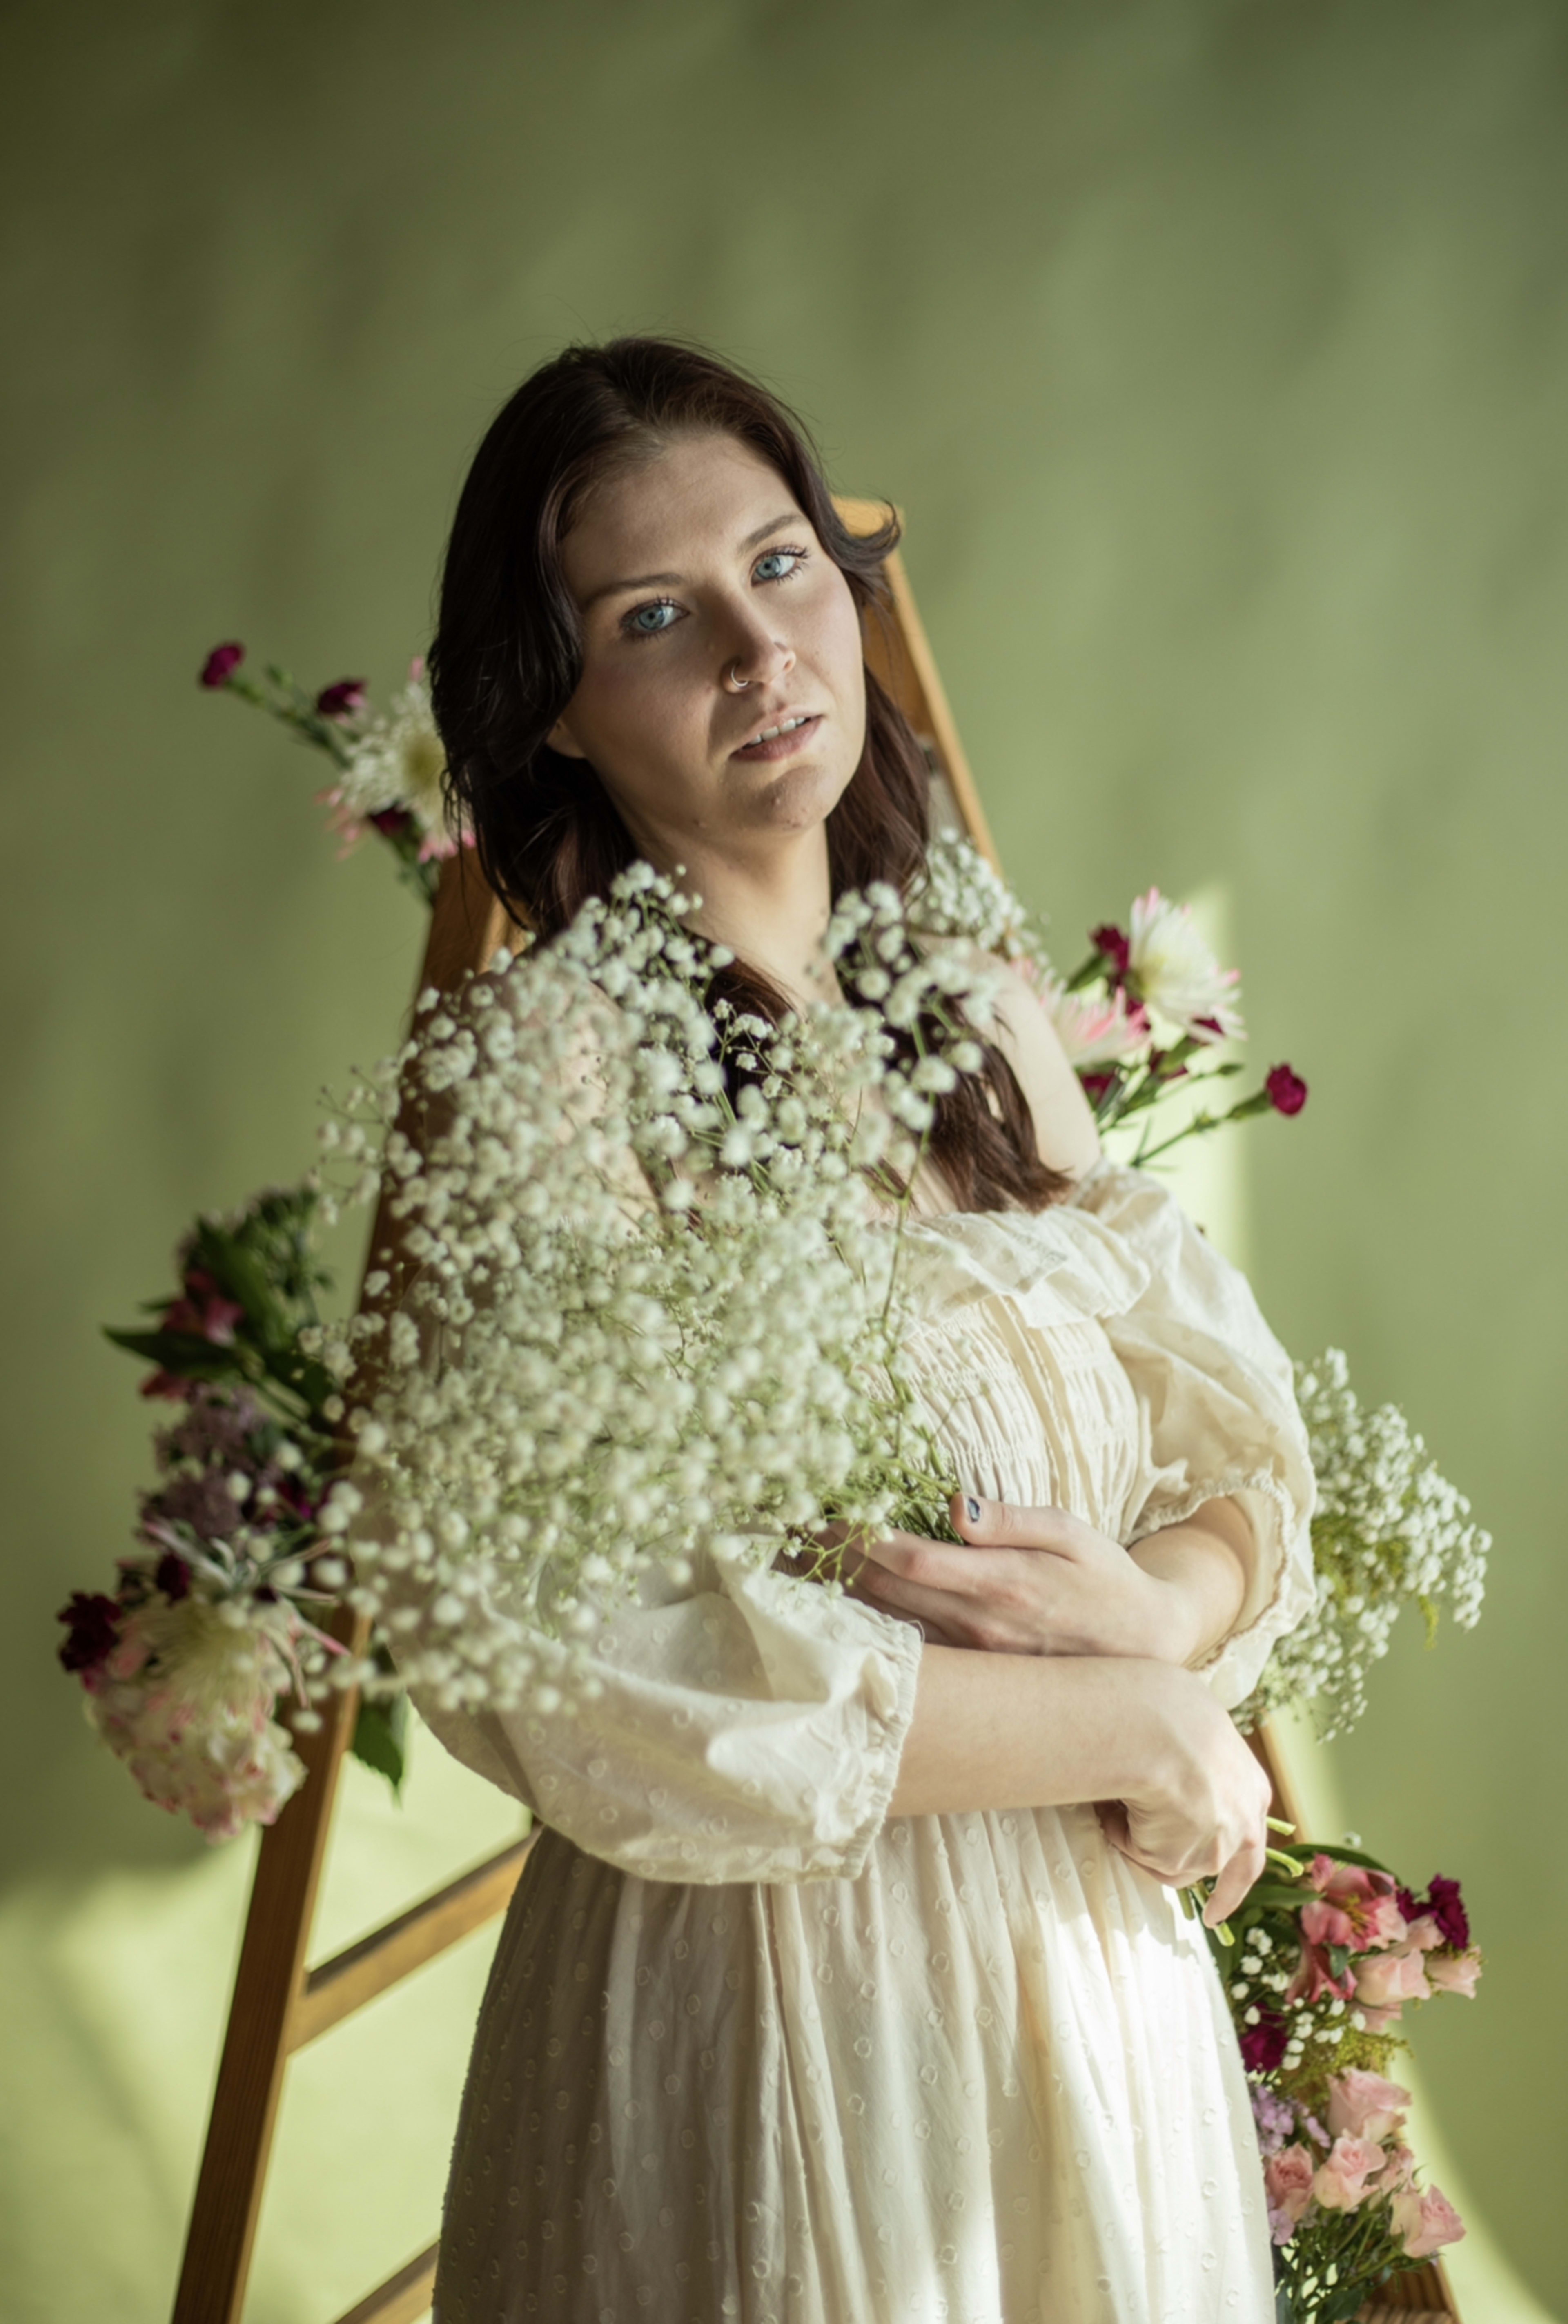 Un shooting photo de mode mettant en scène une femme vêtue de blanc et un bouquet de fleurs printanières.